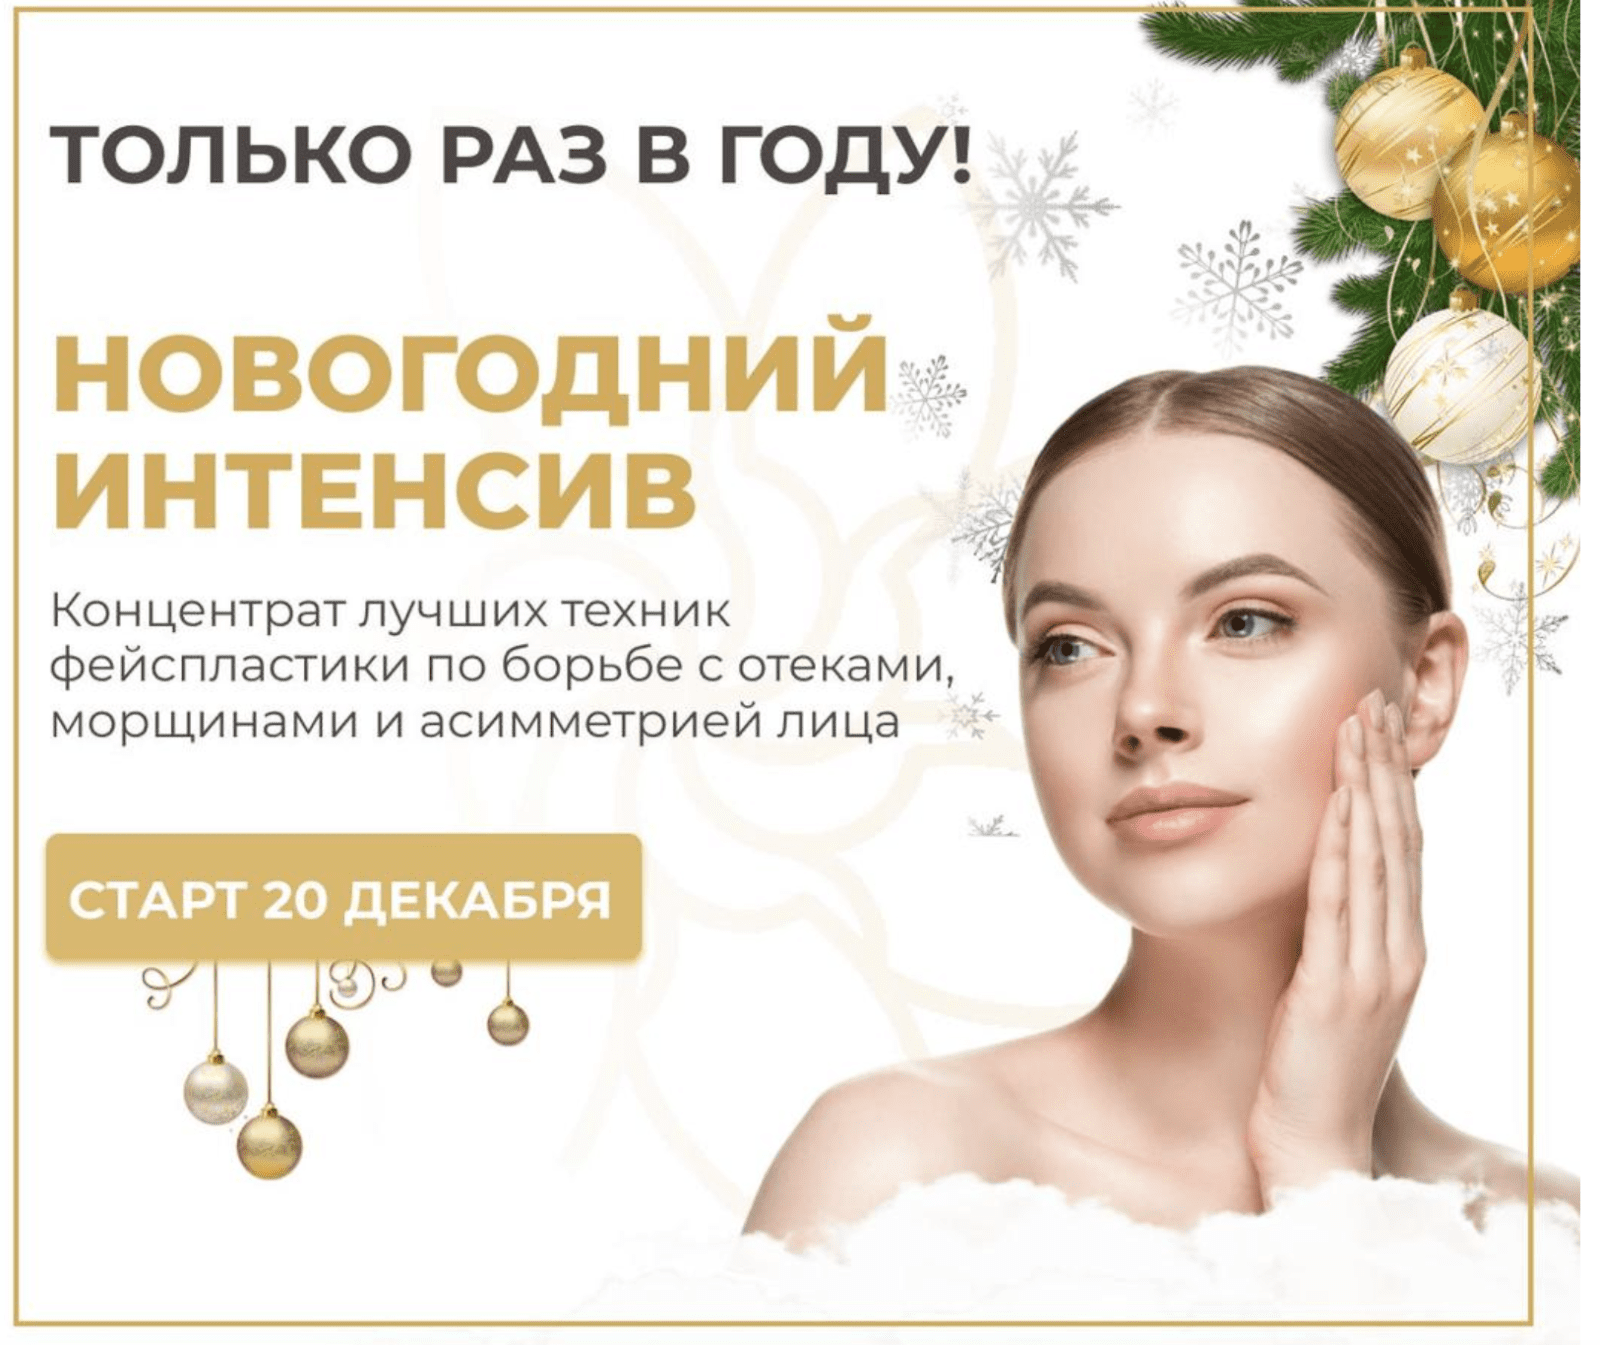 Изображение [Алесь Улищенко] Новогодний интенсив (2021) в посте 250256